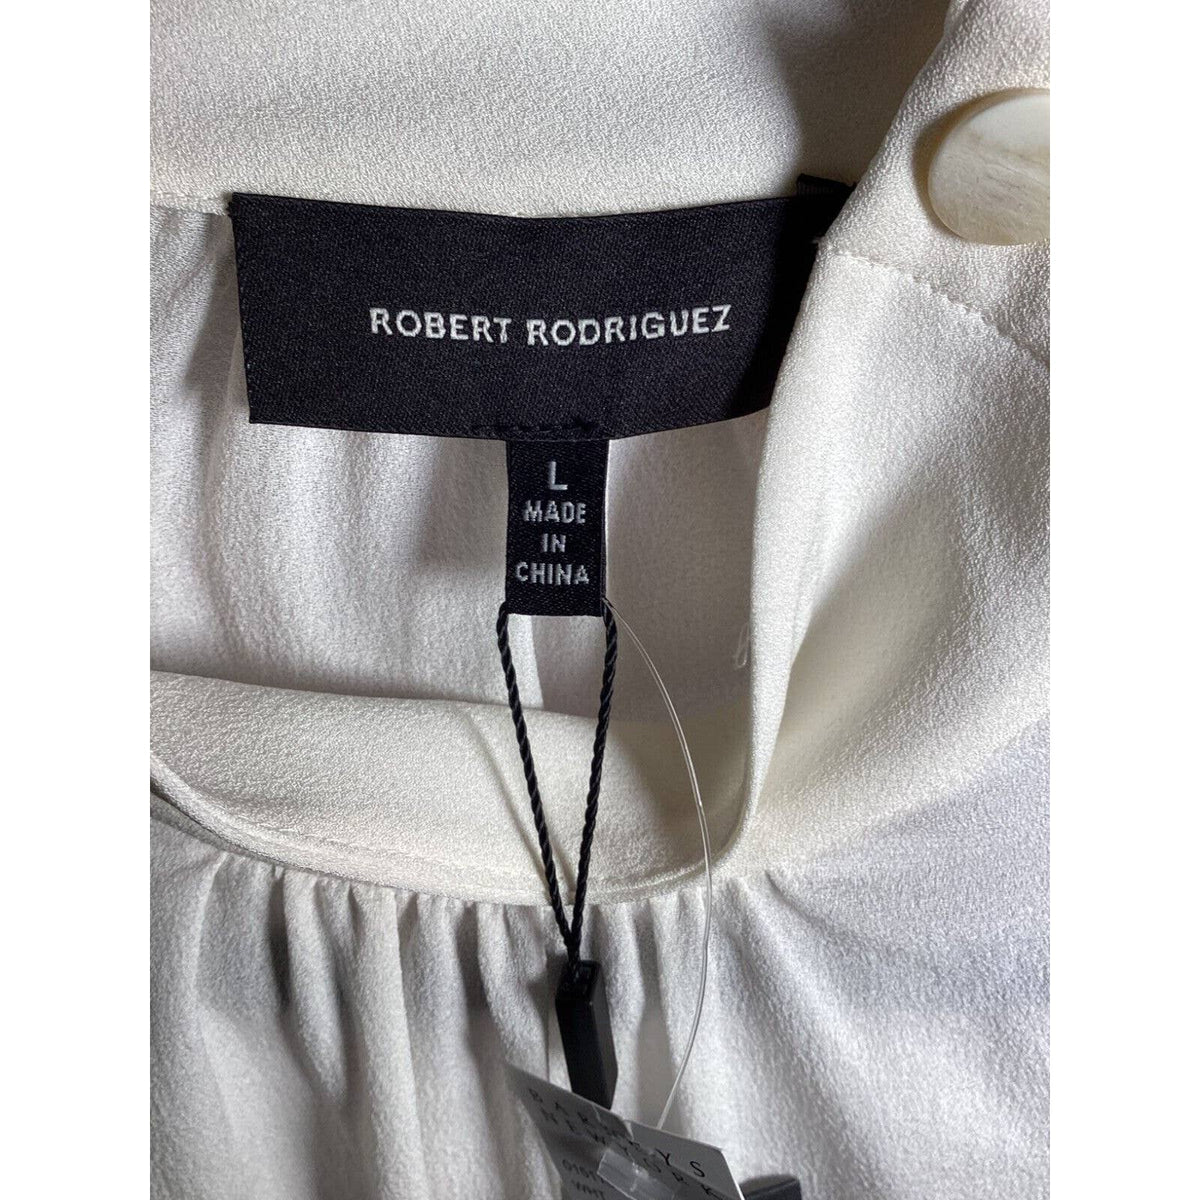 Robert Rodriquez 100% Silk Ivory Bell Sleeve Blouse Sz. Large NWT